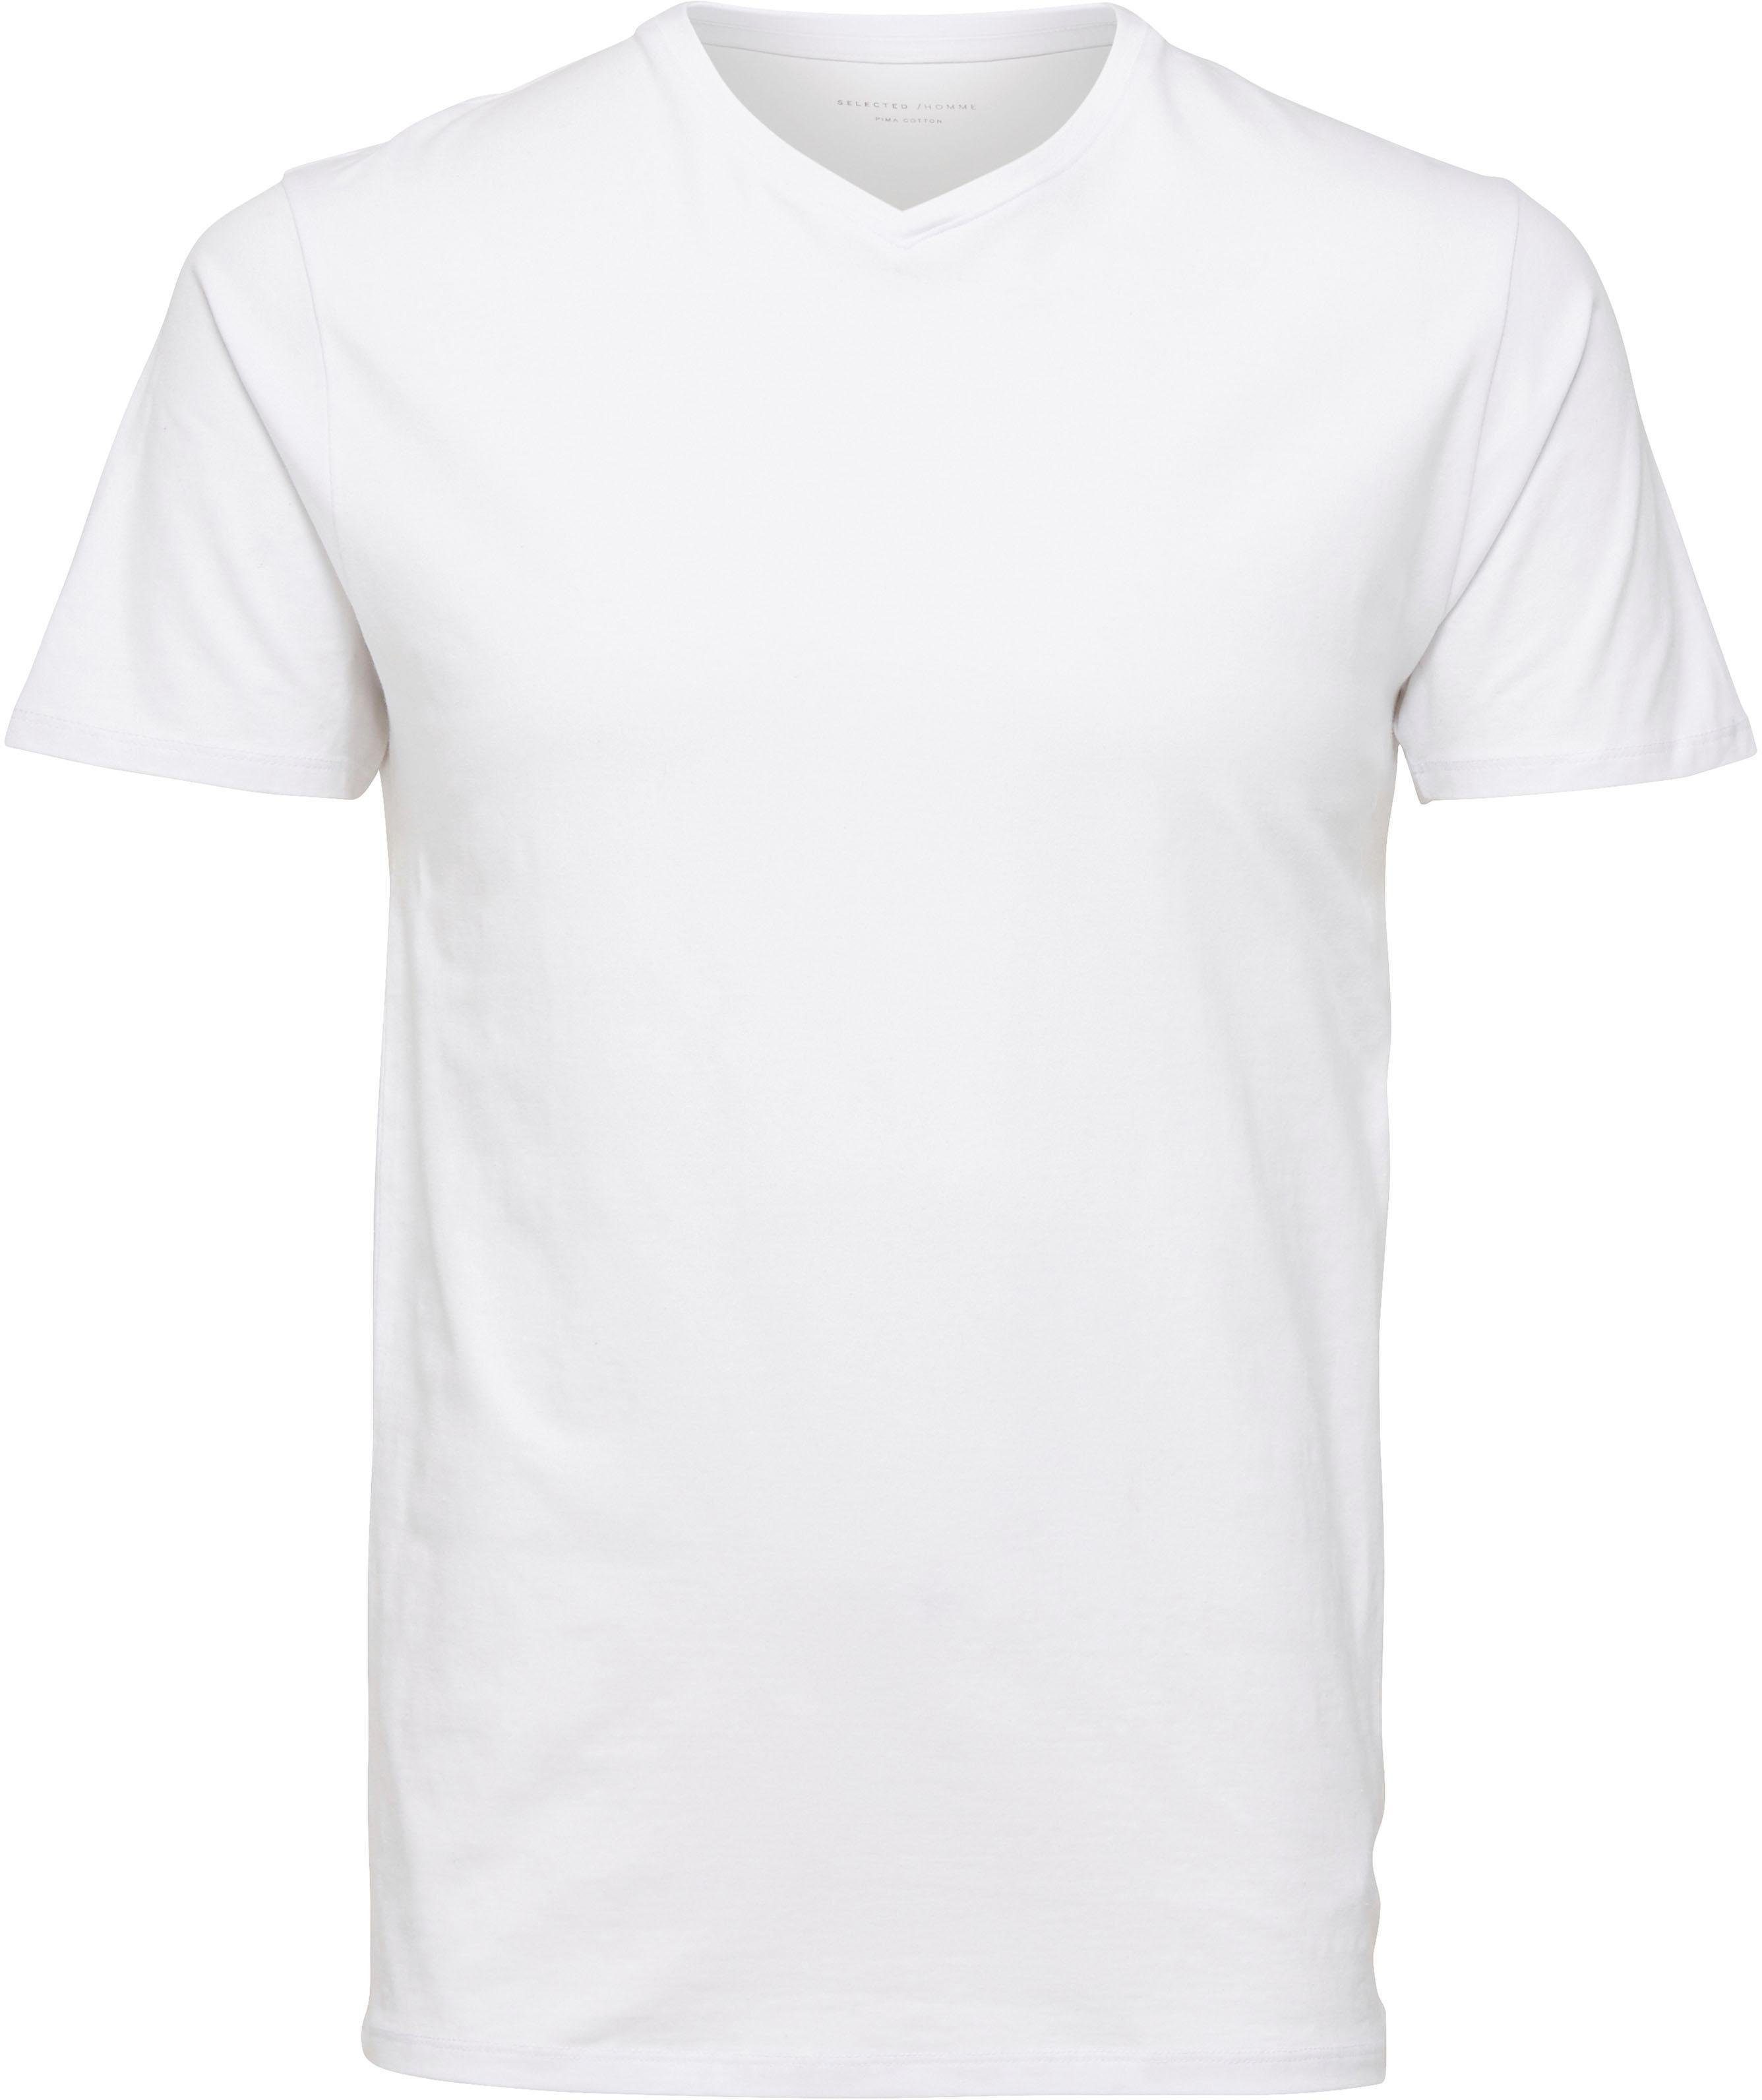 SELECTED HOMME V-Shirt Basic V-Shirt White